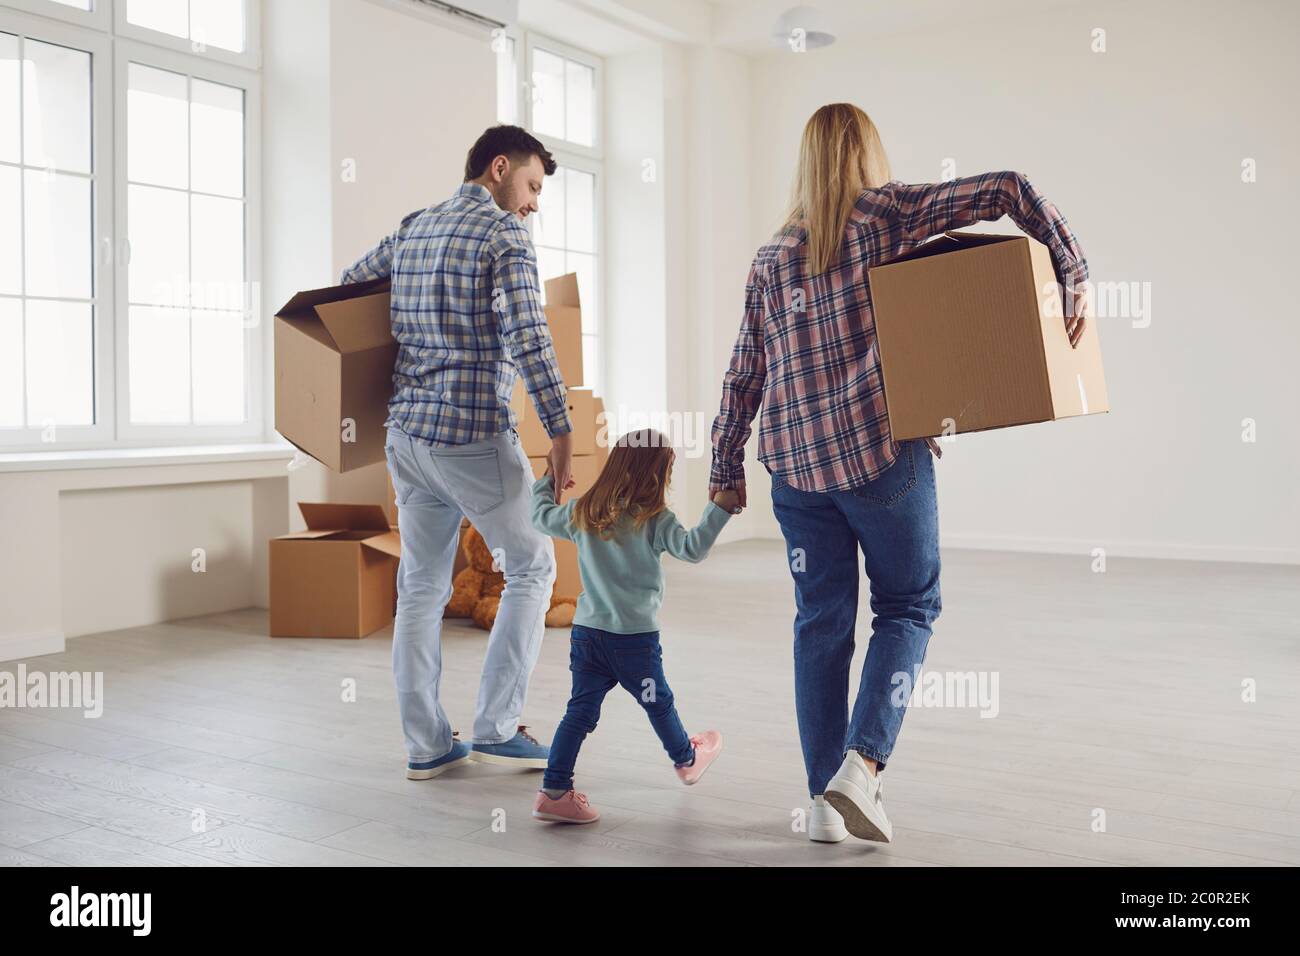 Glückliche Familie mit Kindern, die in einem neuen Mehrfamilienhaus mit Kisten umziehen. Stockfoto